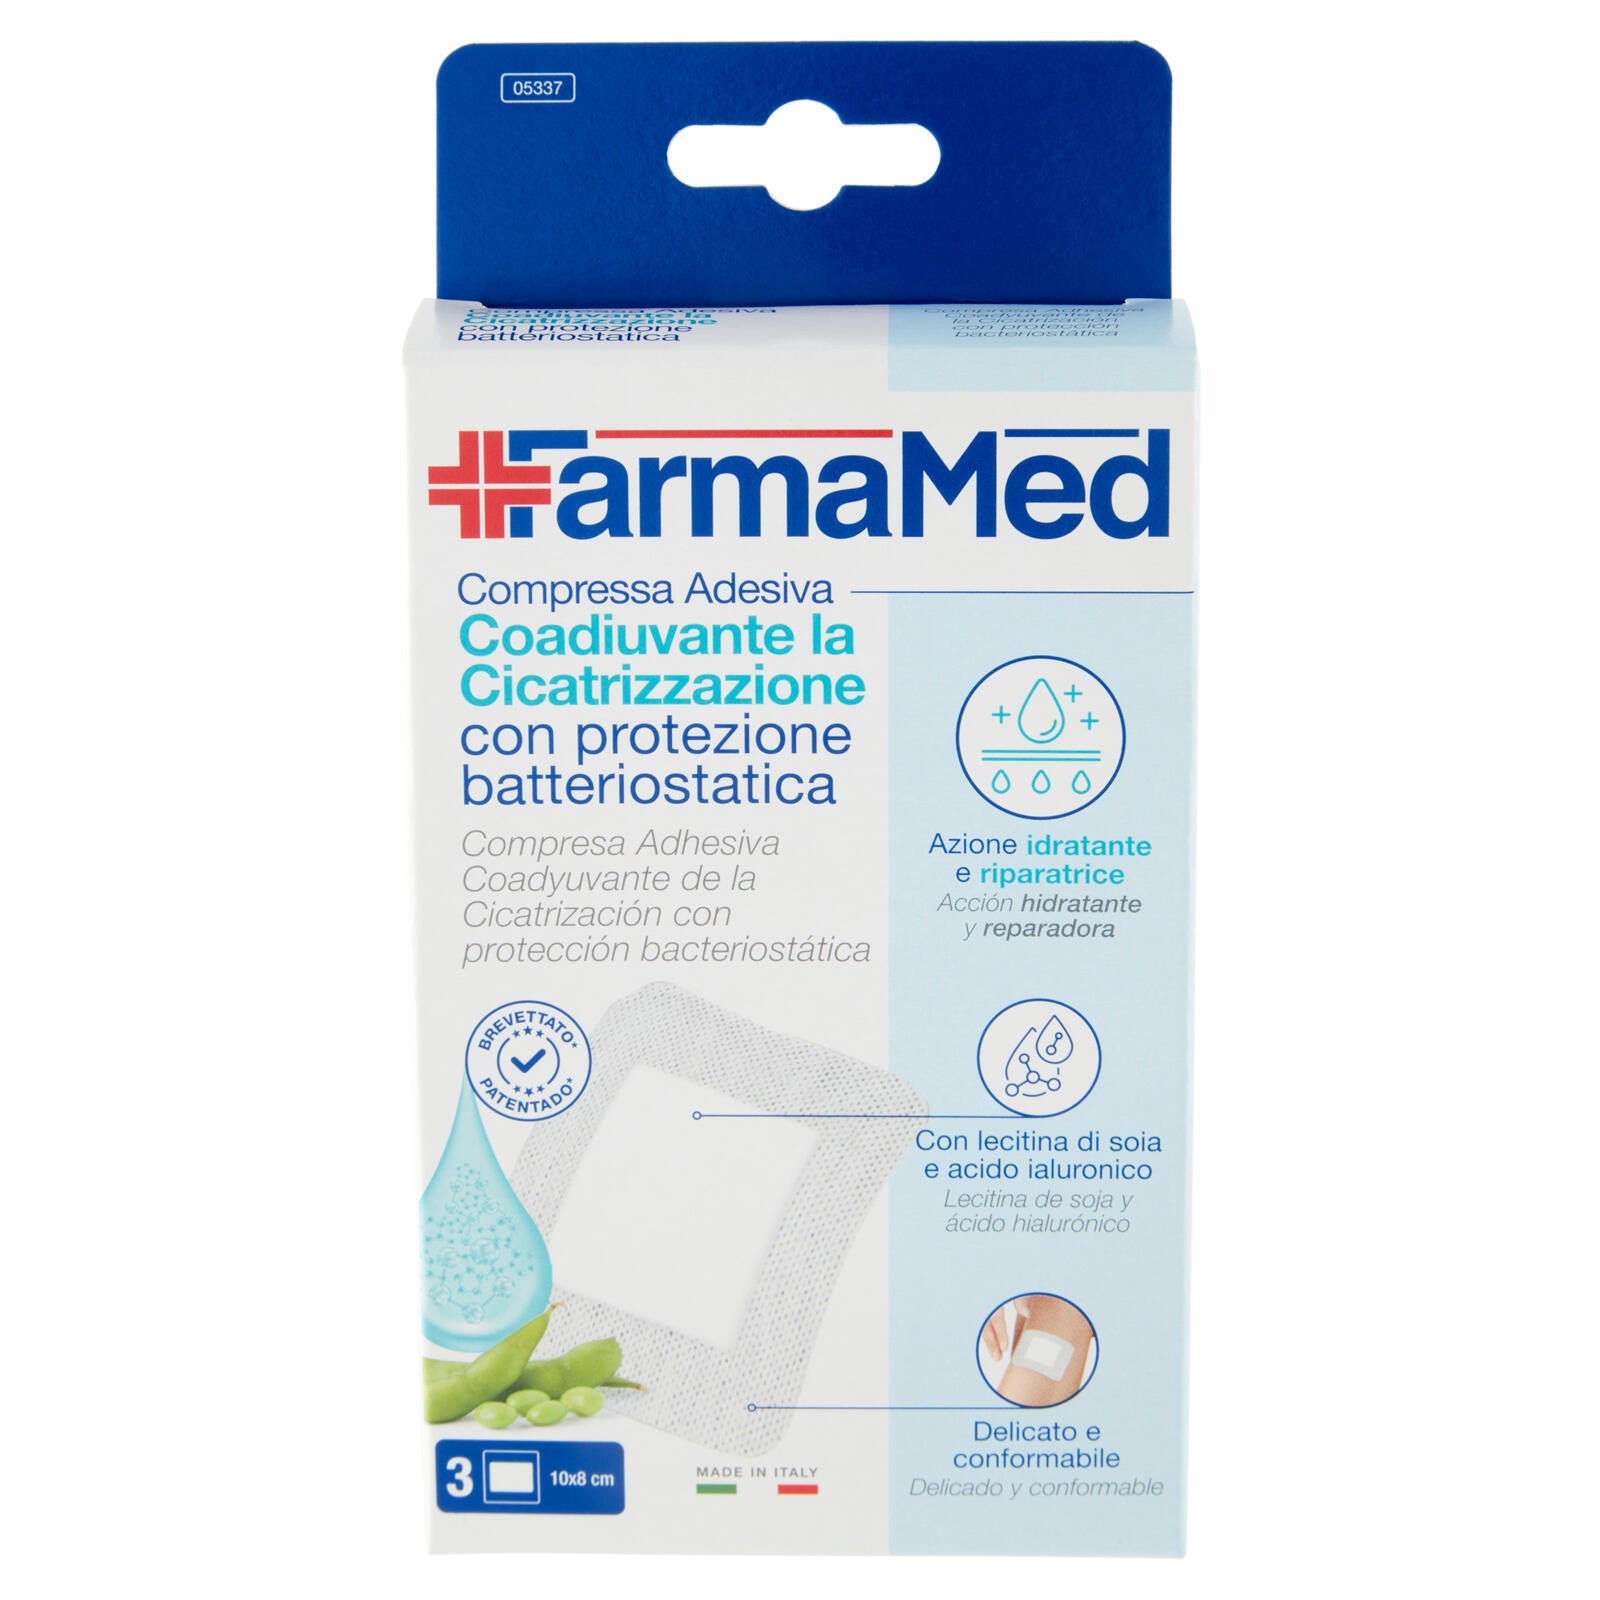 FarmaMed Compressa Adesiva Coadiuvante la Cicatrizzazione con protezione batteriostatica 3 pz